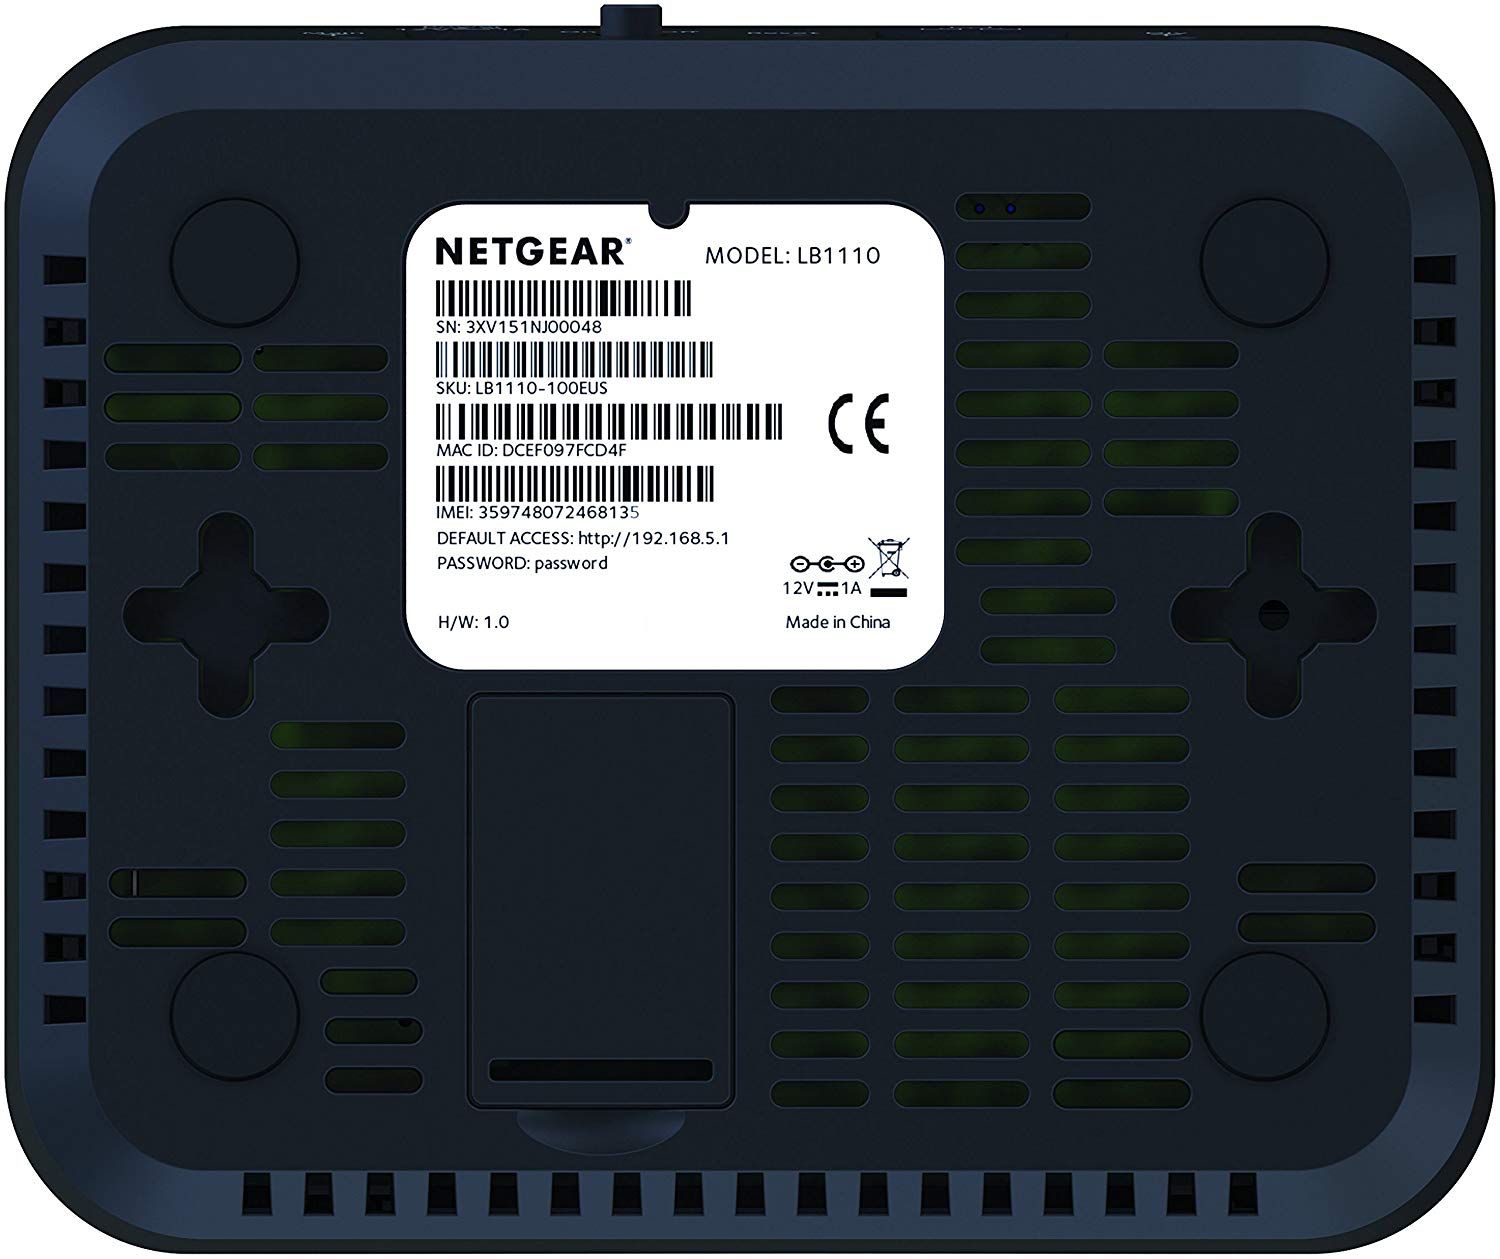 Netgear Lb1110 Alternative Firmware